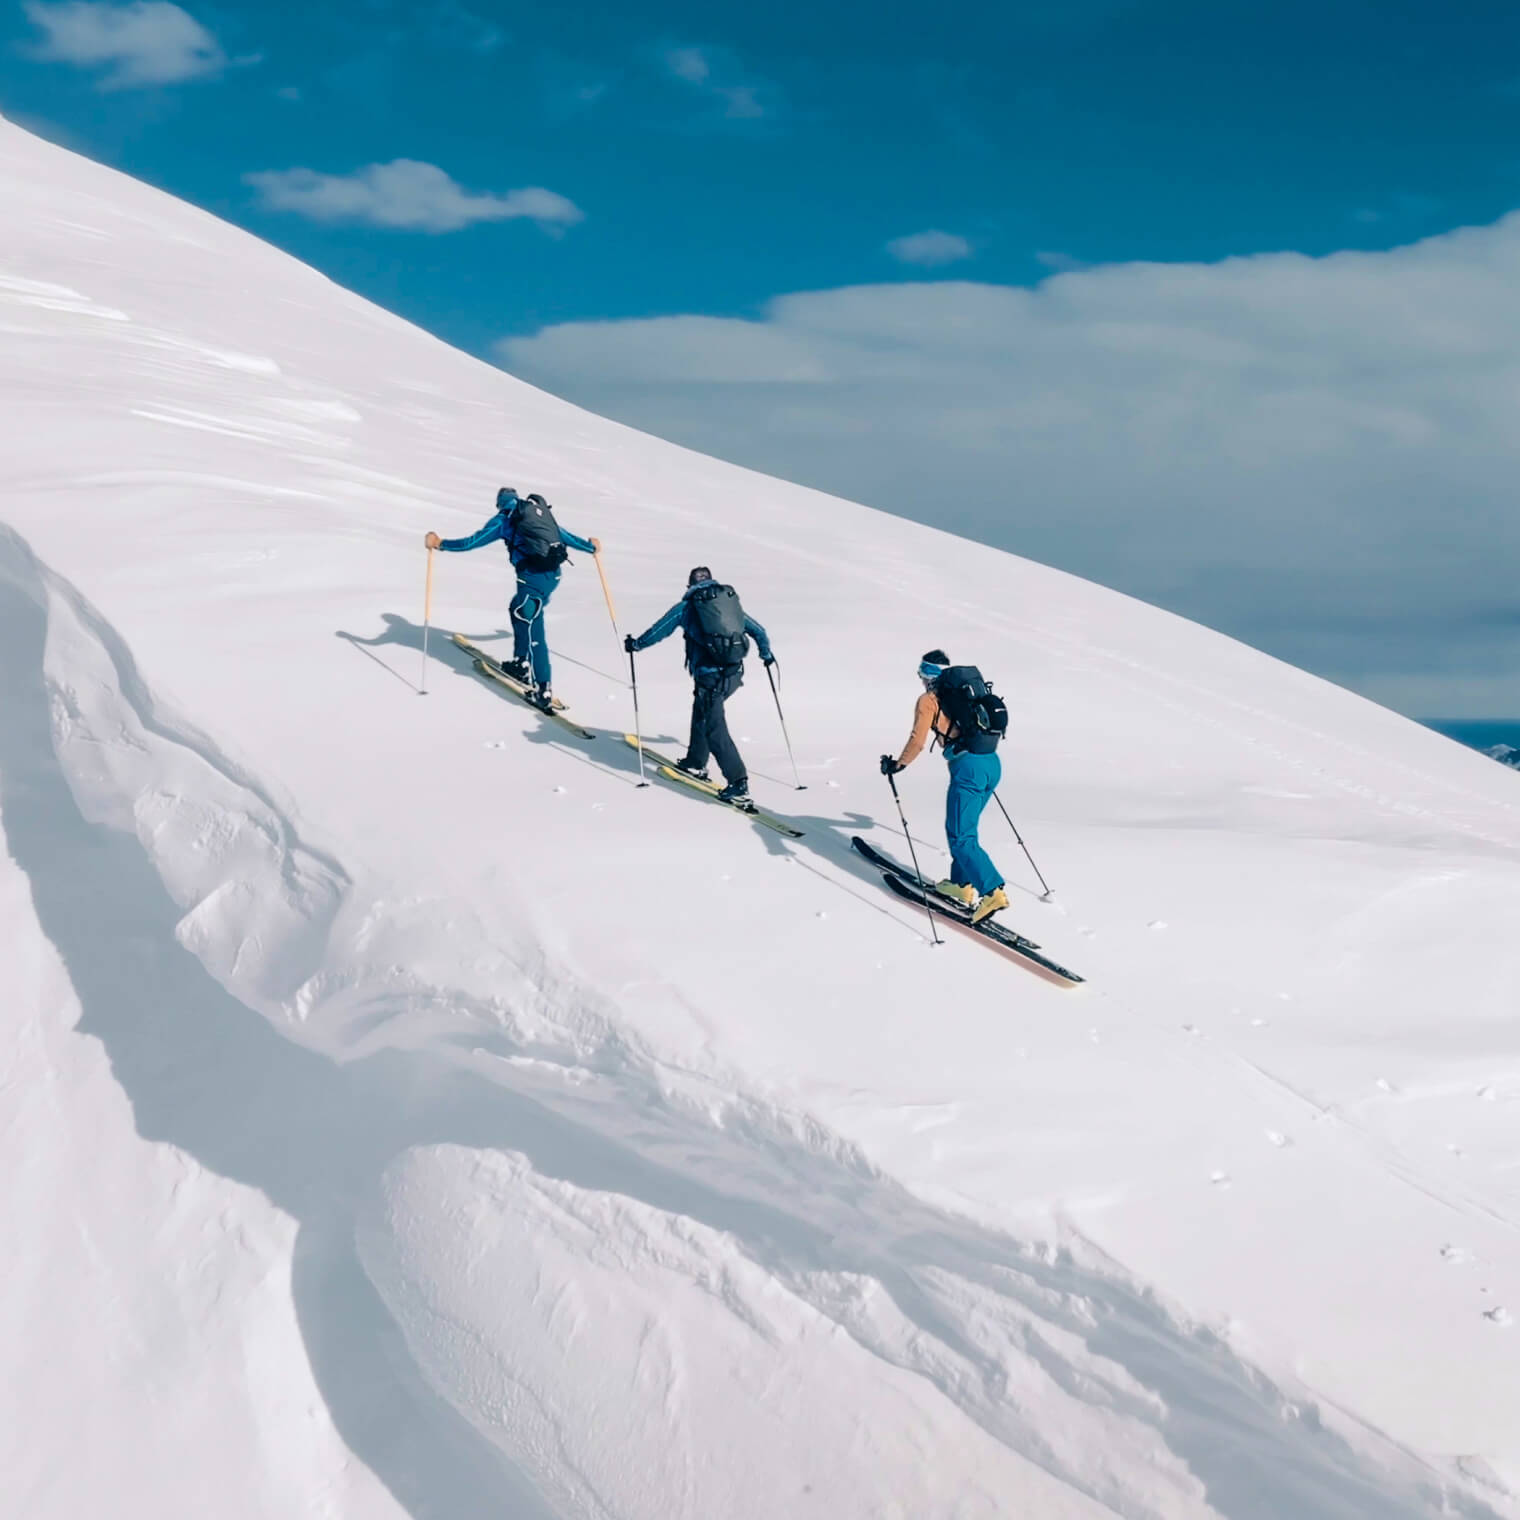 Ски-альпинизм